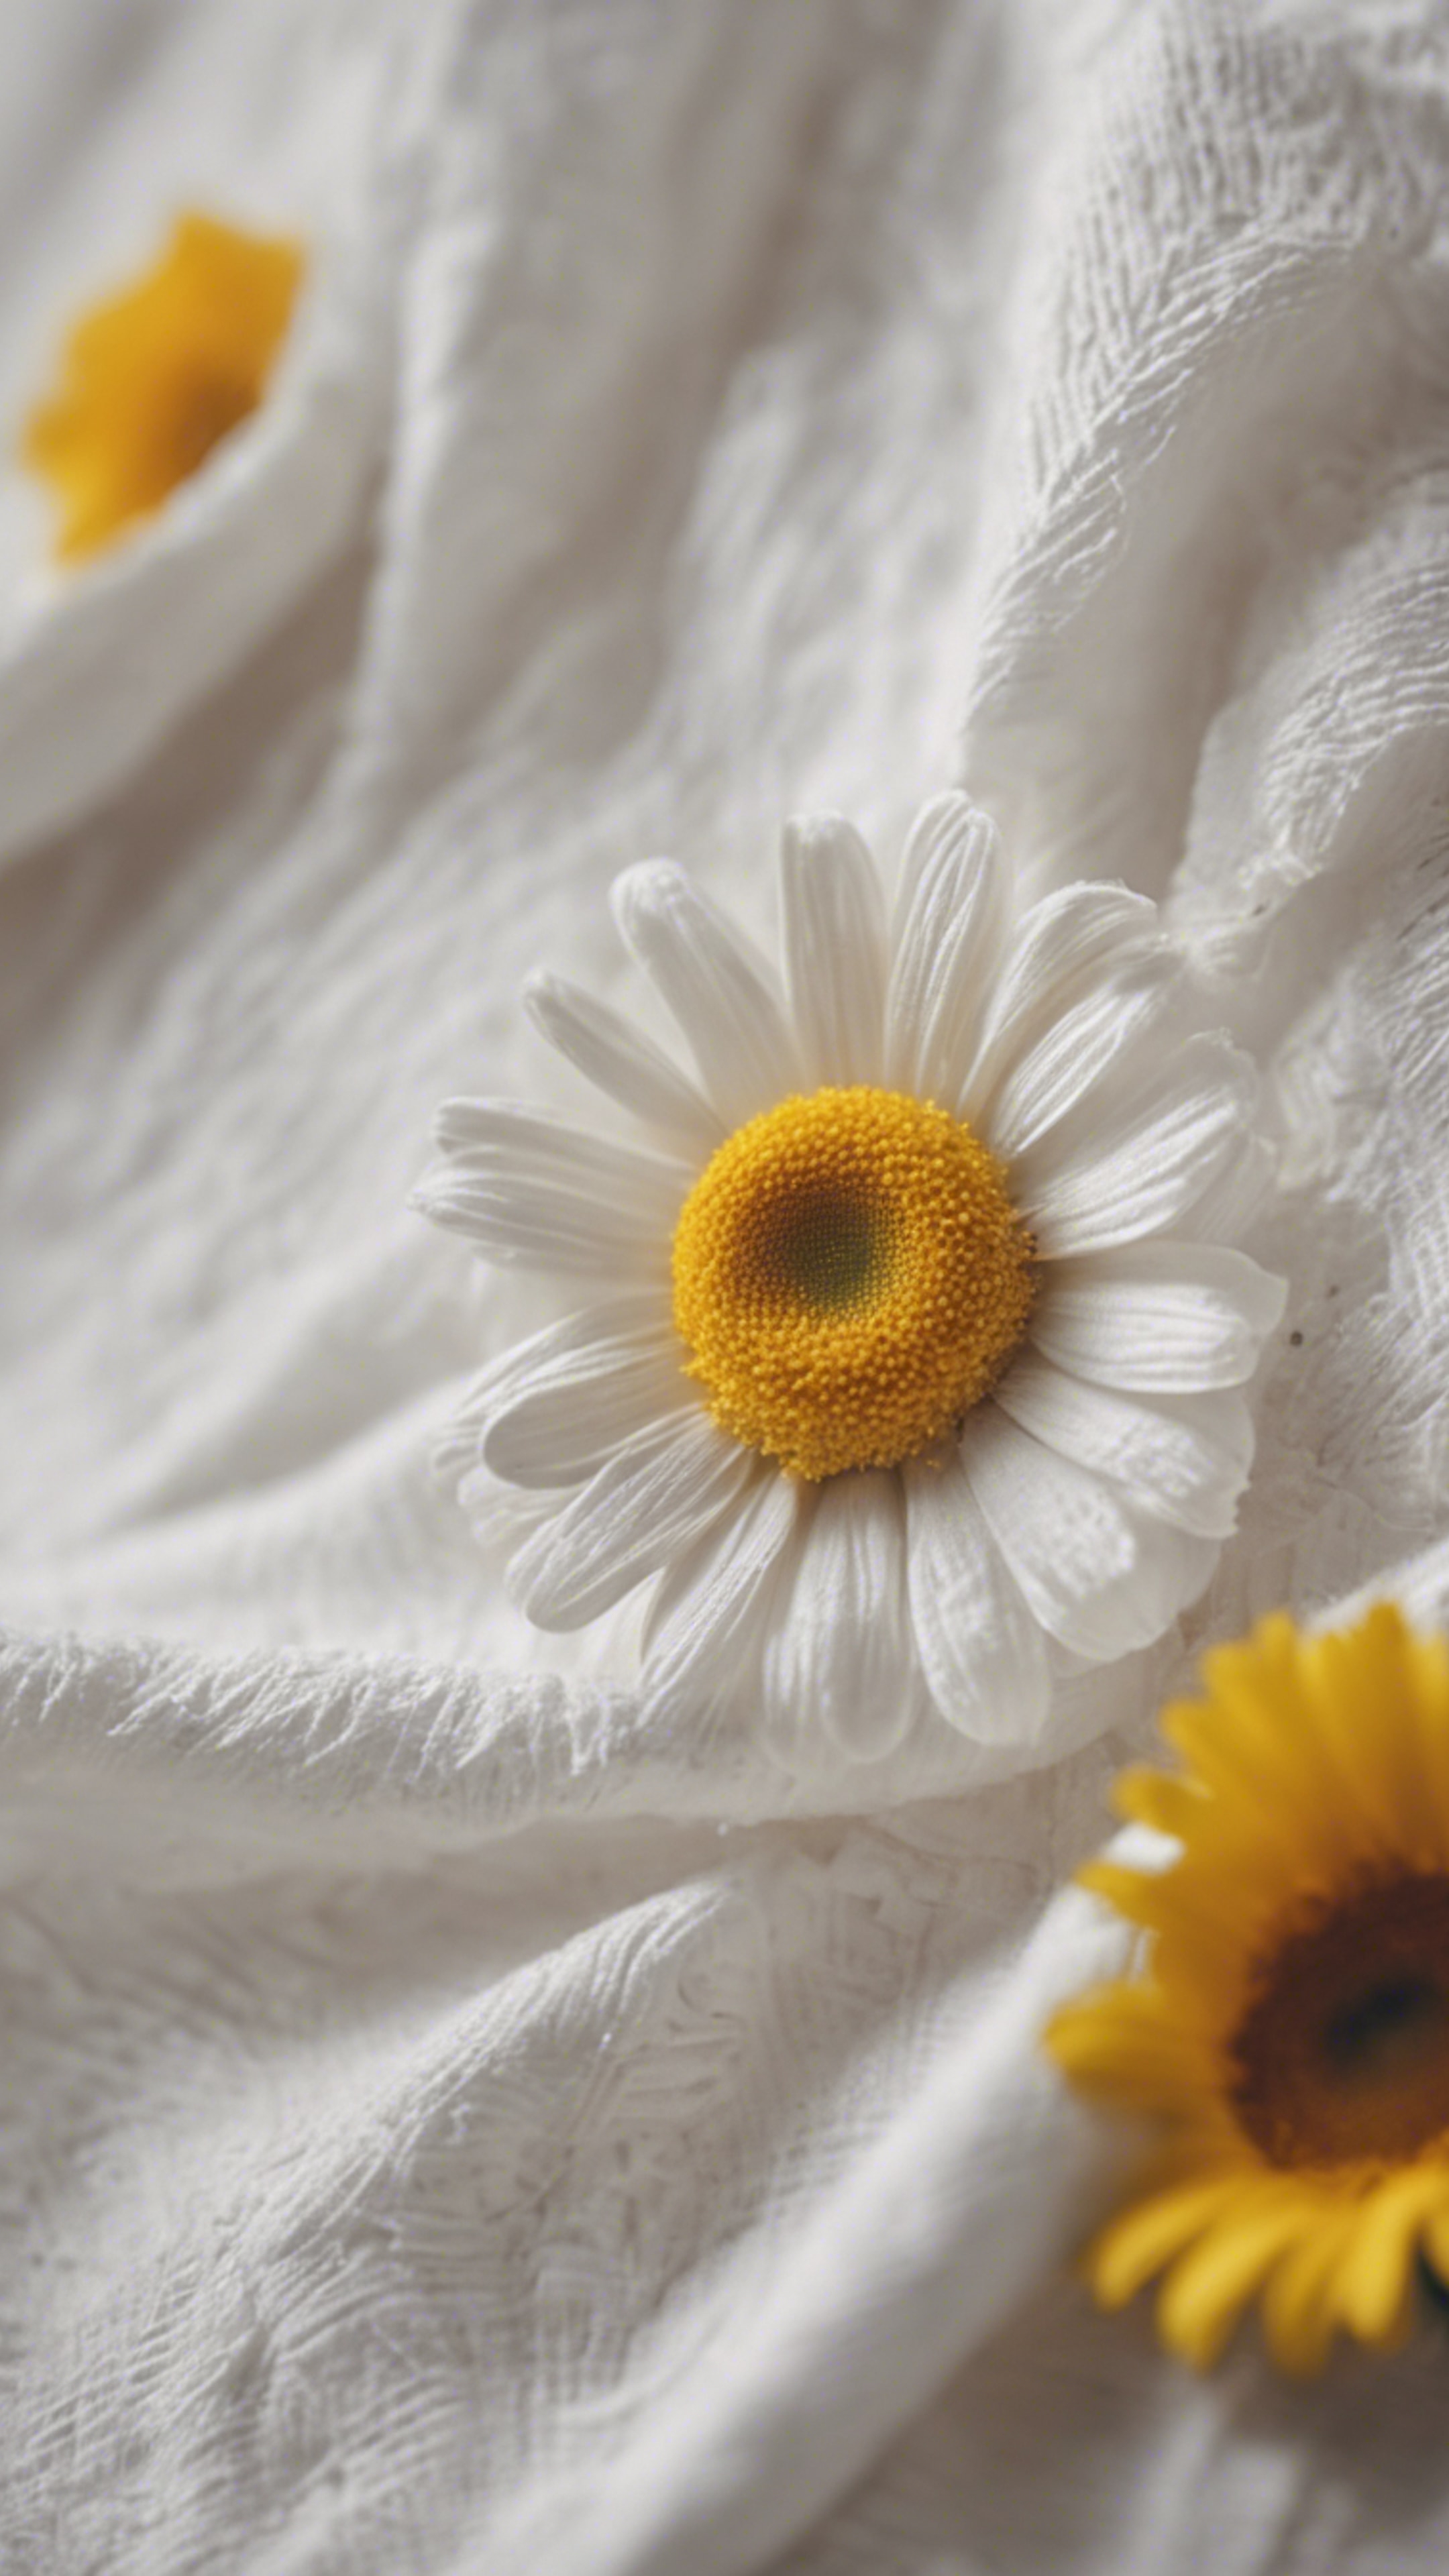 A white cotton dress with a daisy, featuring yellow petals and a white center. Divar kağızı[81c17e18773146008e6c]